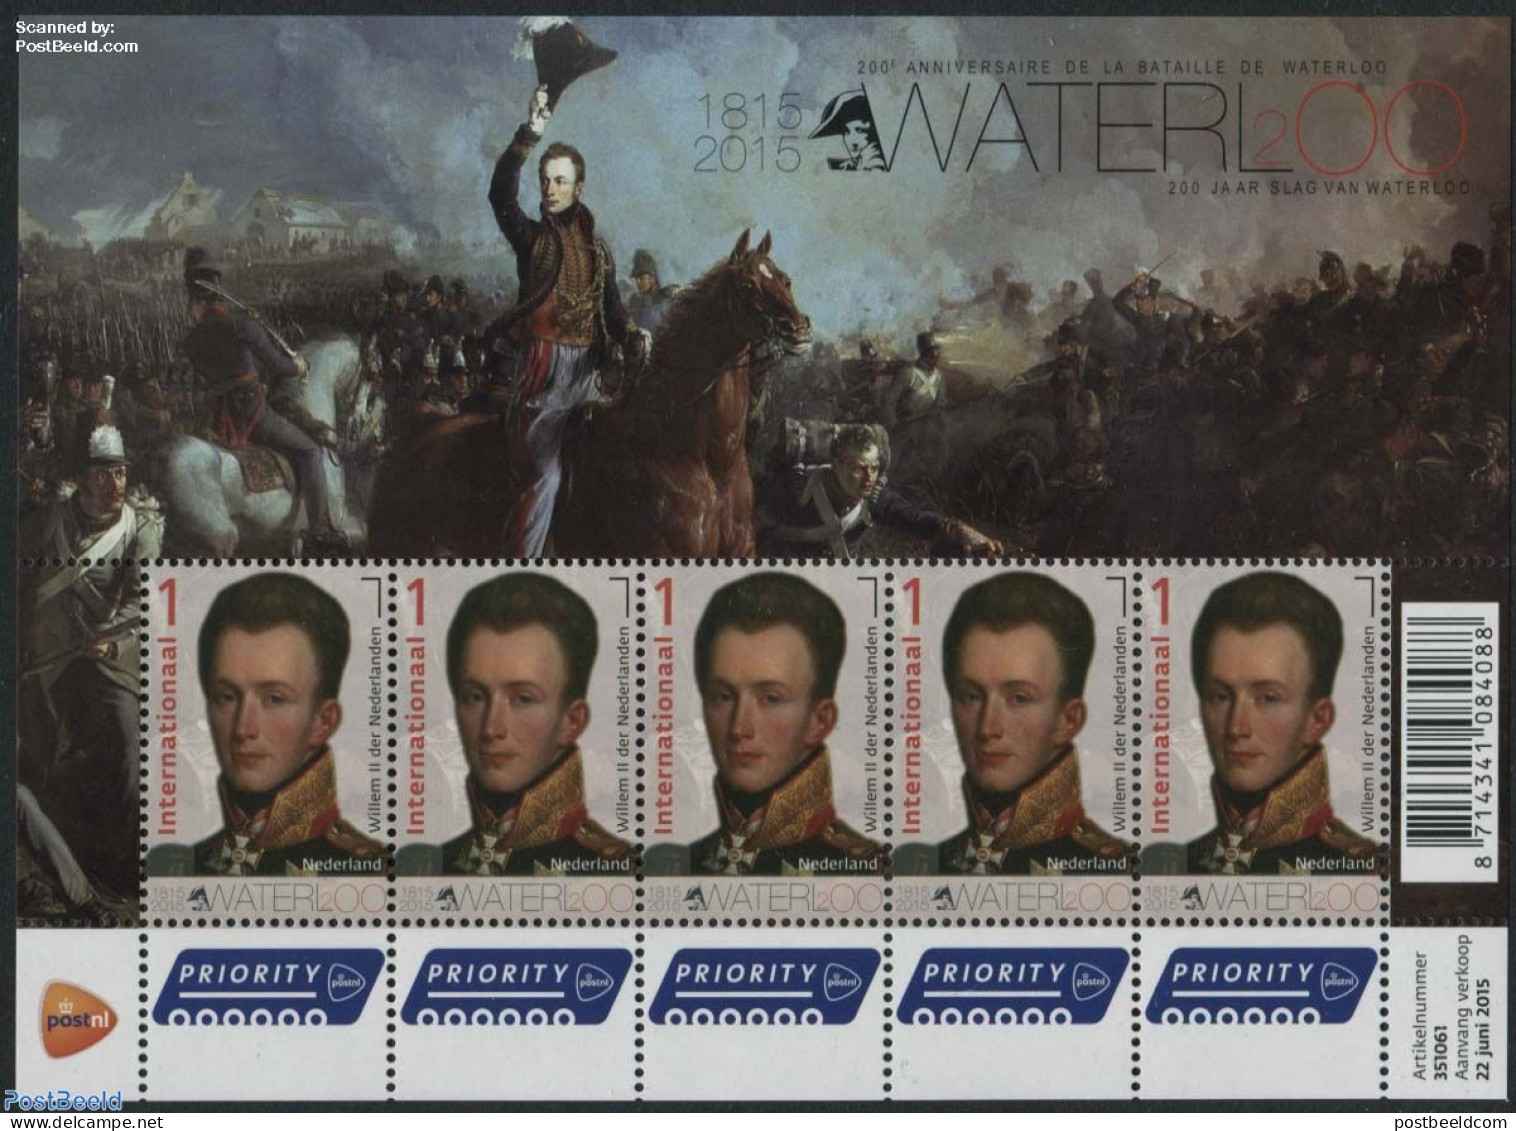 Netherlands 2015 200 Years Battle Of Waterloo M/s, Mint NH, History - Various - Kings & Queens (Royalty) - Militarism .. - Ongebruikt